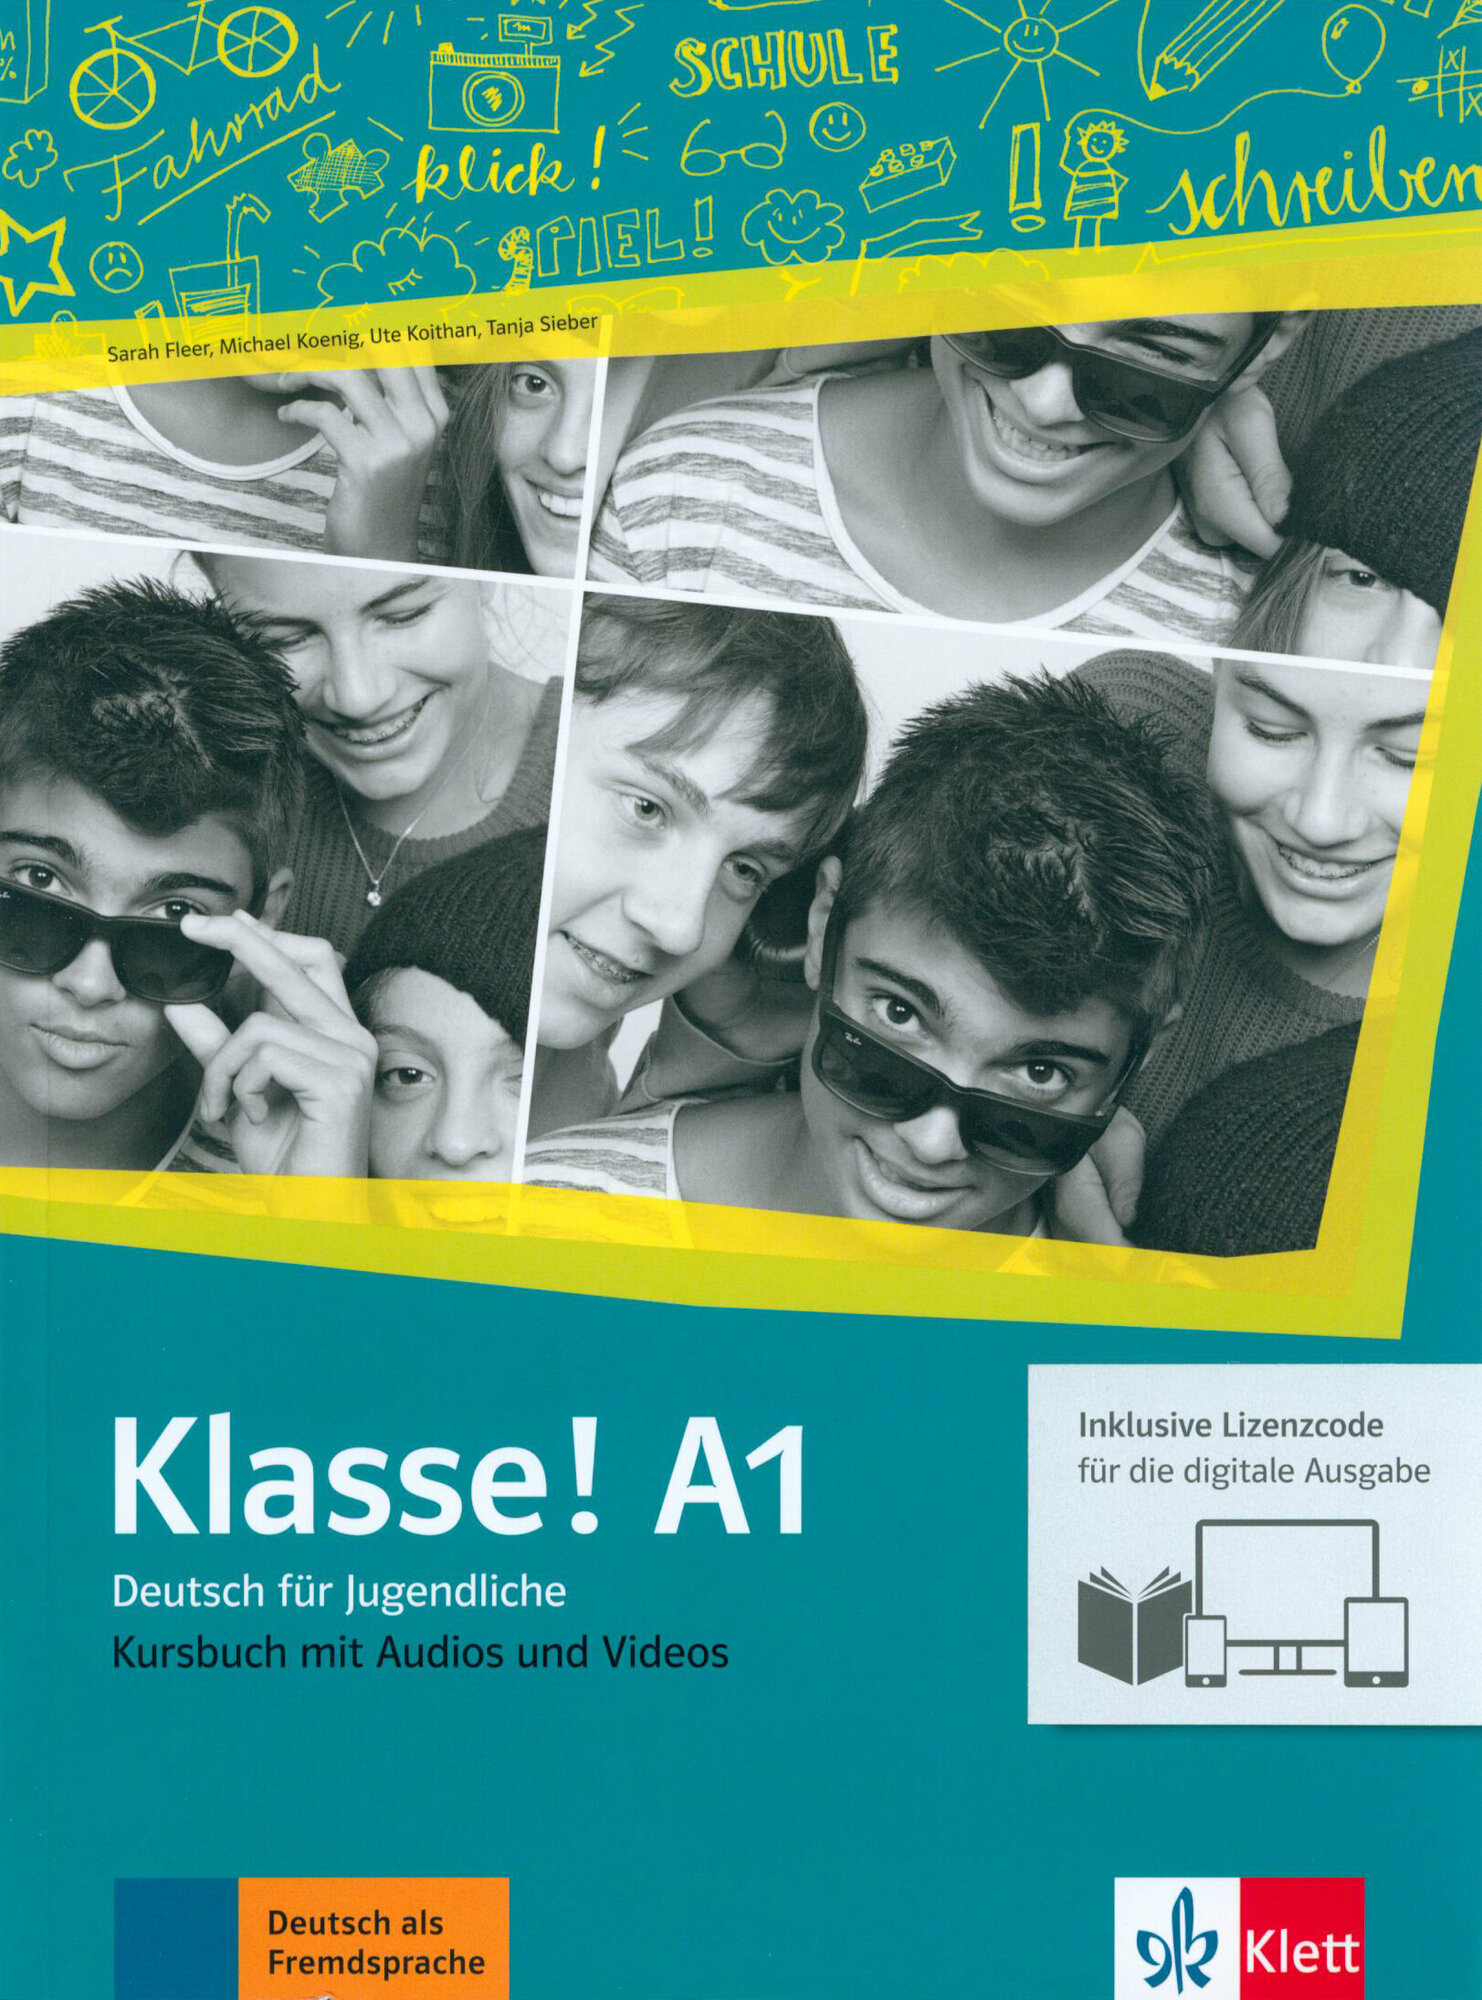 Klasse! A1. Kursbuch mit Audios-Videos inklusive Lizenzcode fur das Kursbuch. Deutsch fur Jugendlich